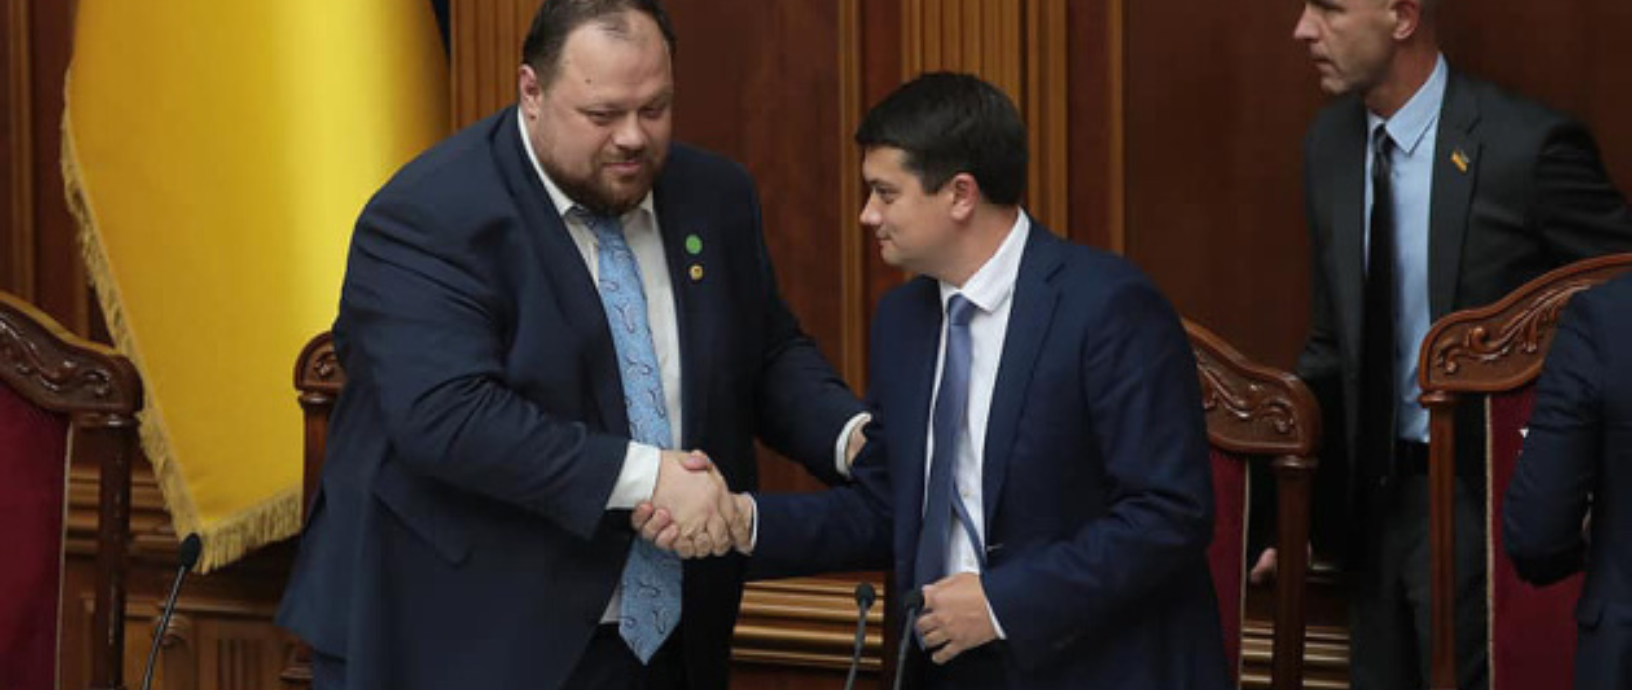 Разумков передал право вести заседания Верховной Рады Стефанчуку